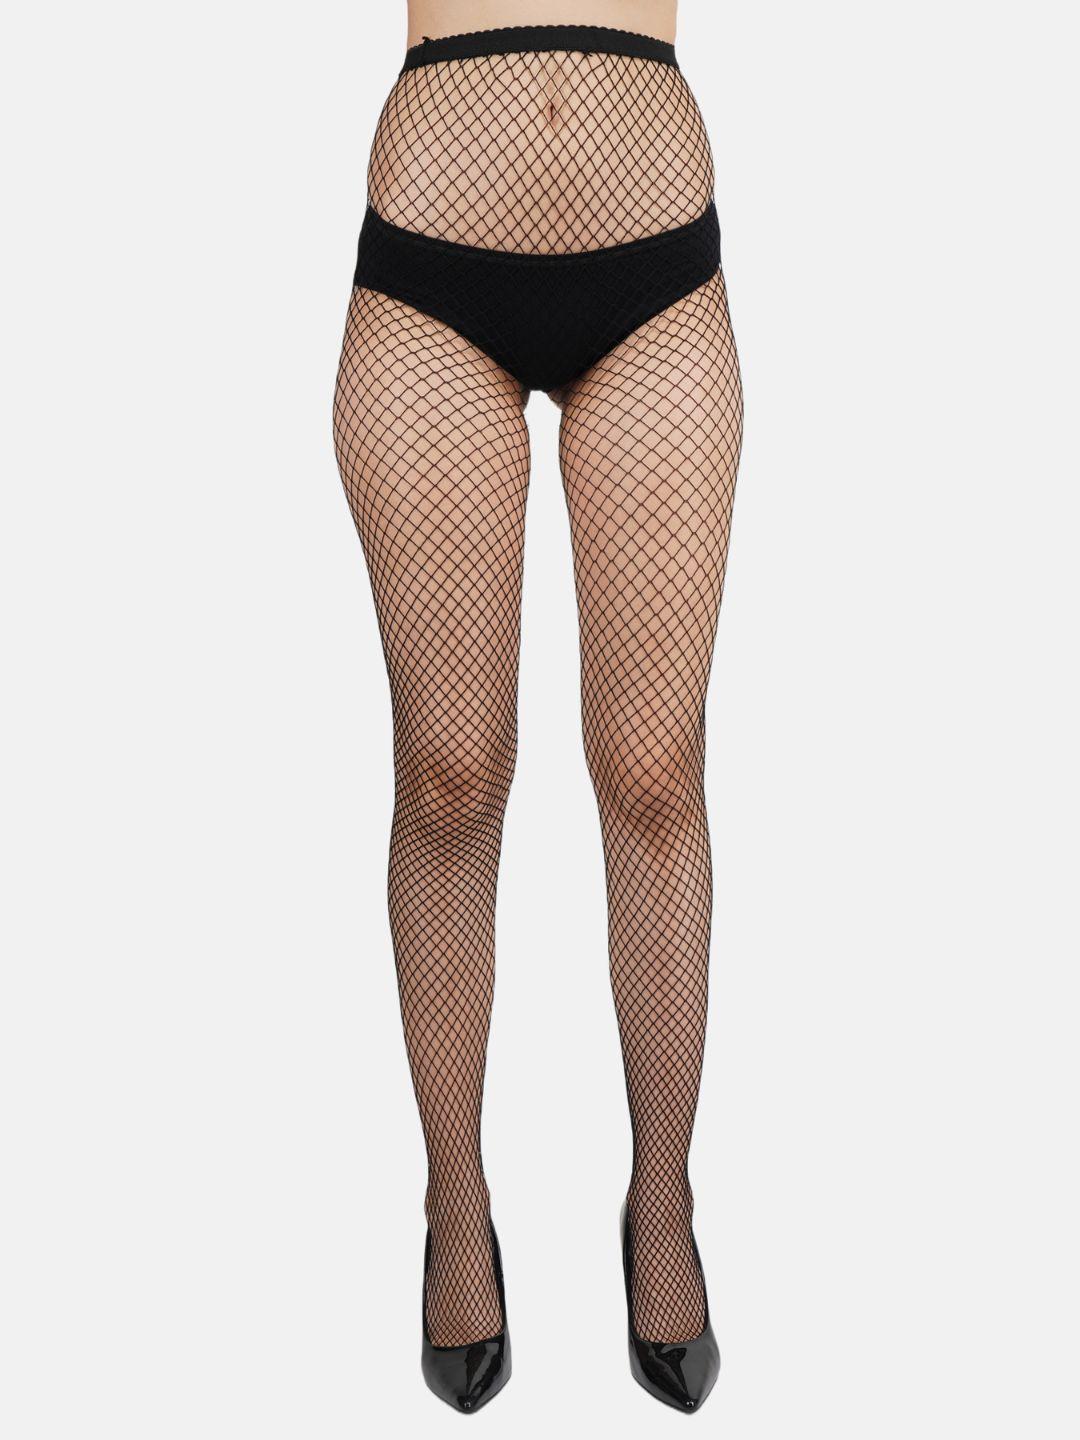 n2s next2skin women black patterned fishnet stockings